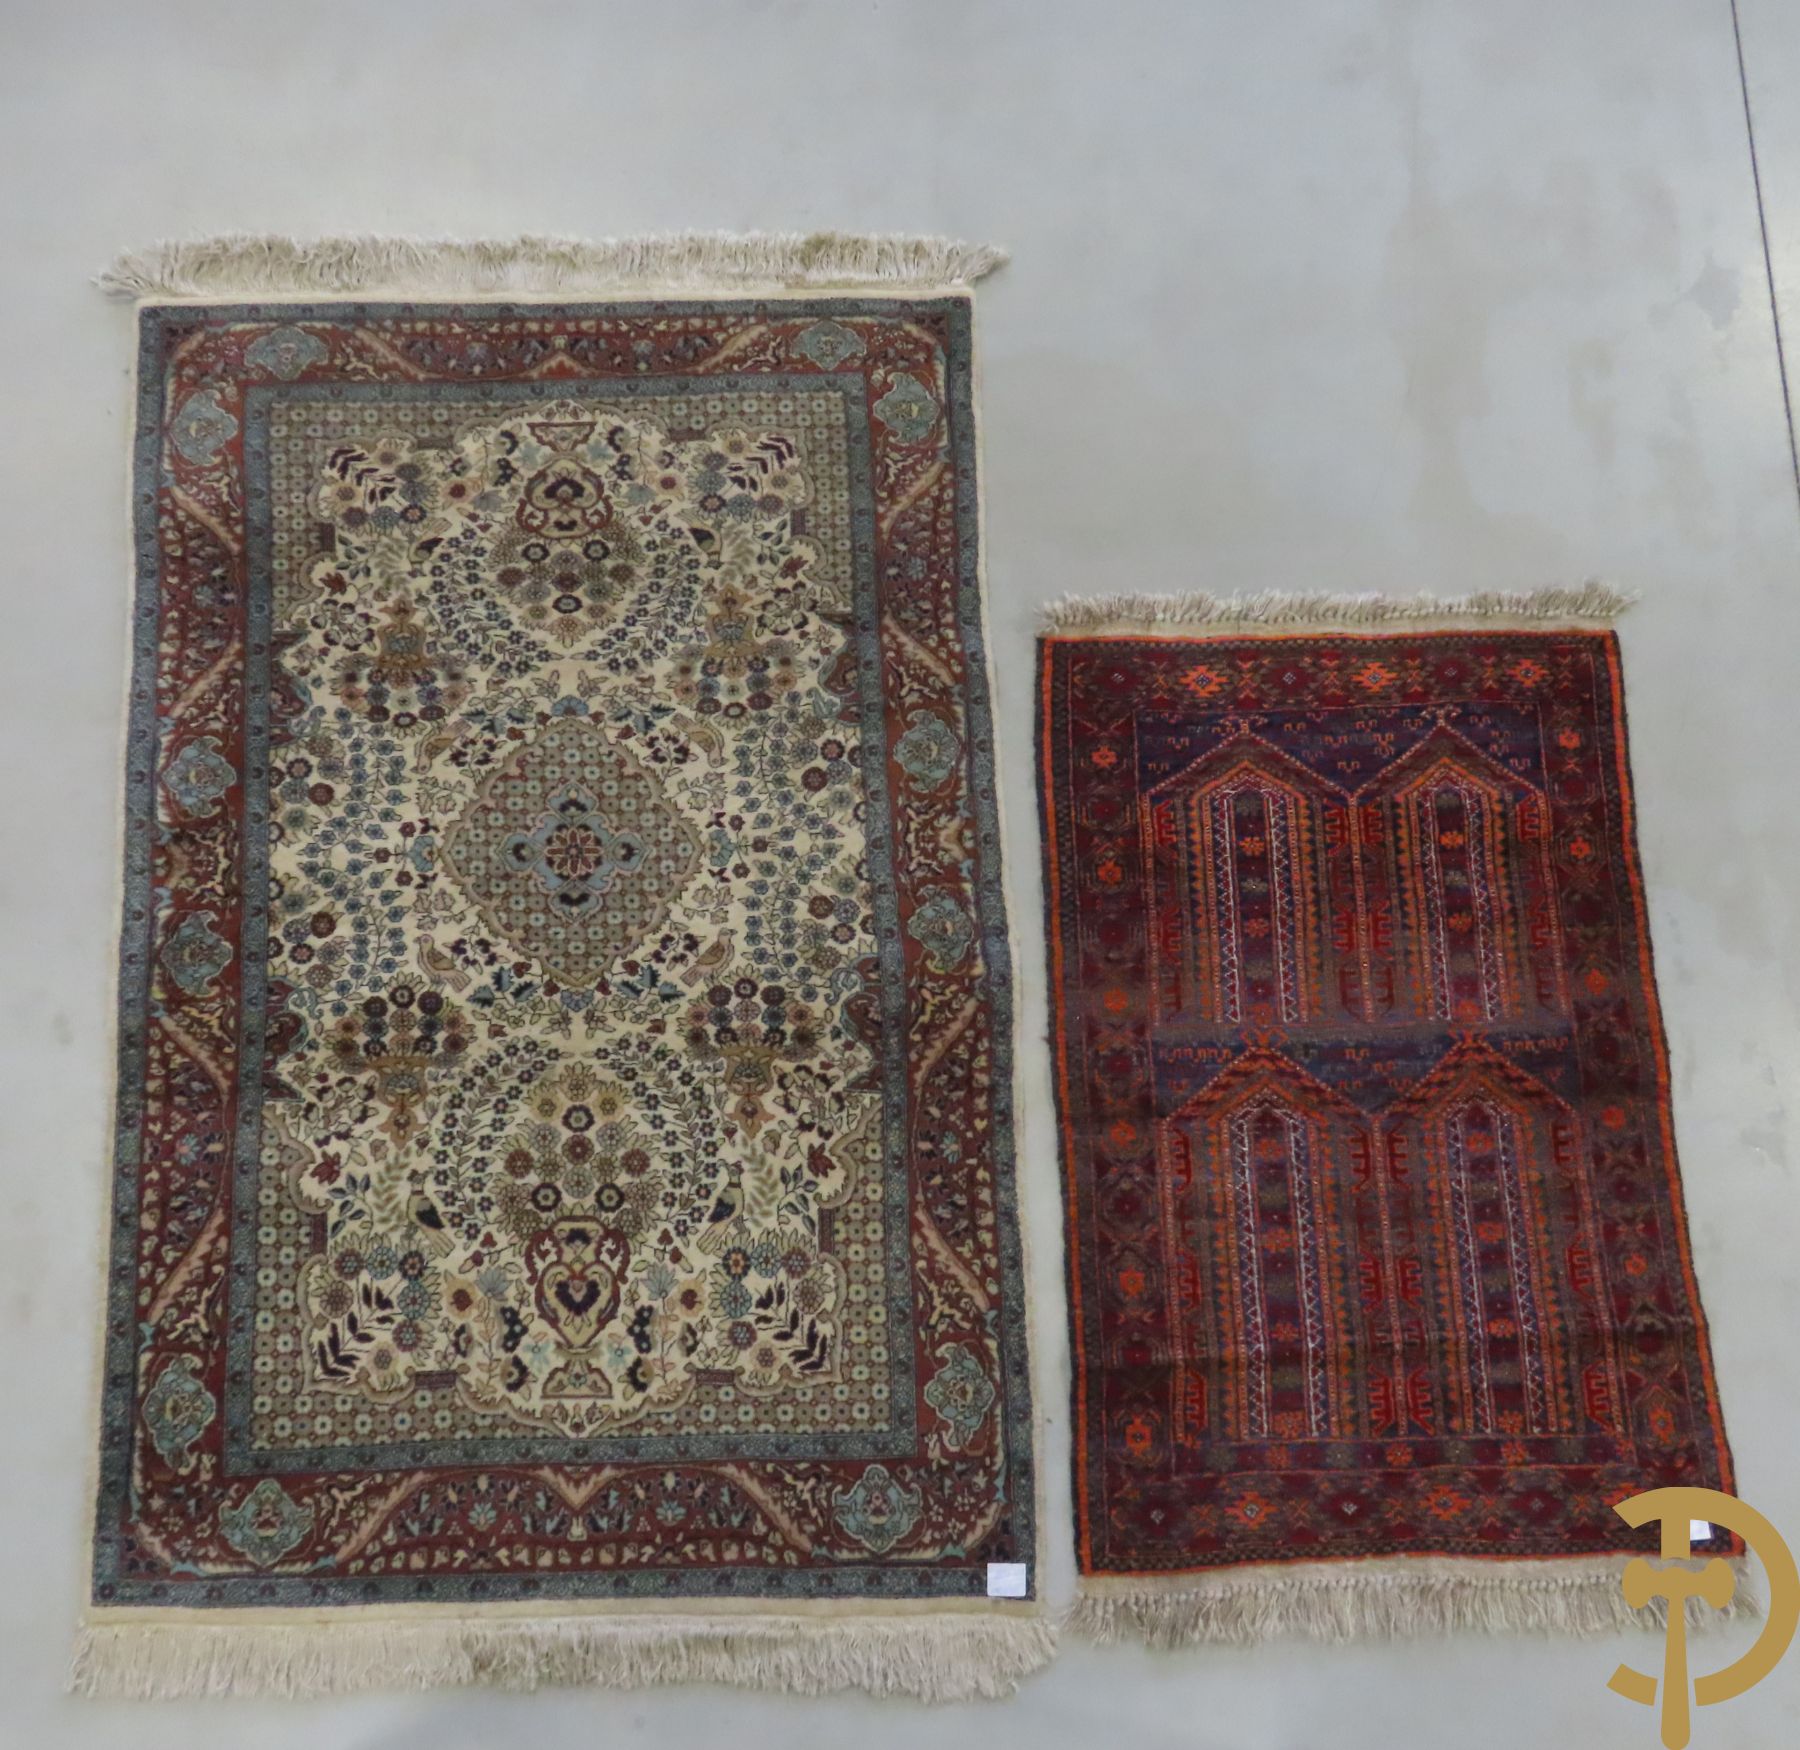 Oosters handgeknoopt tapijt Tebriz met decor van amforen en papegaai + oosters handgeknoopt bidtapijt